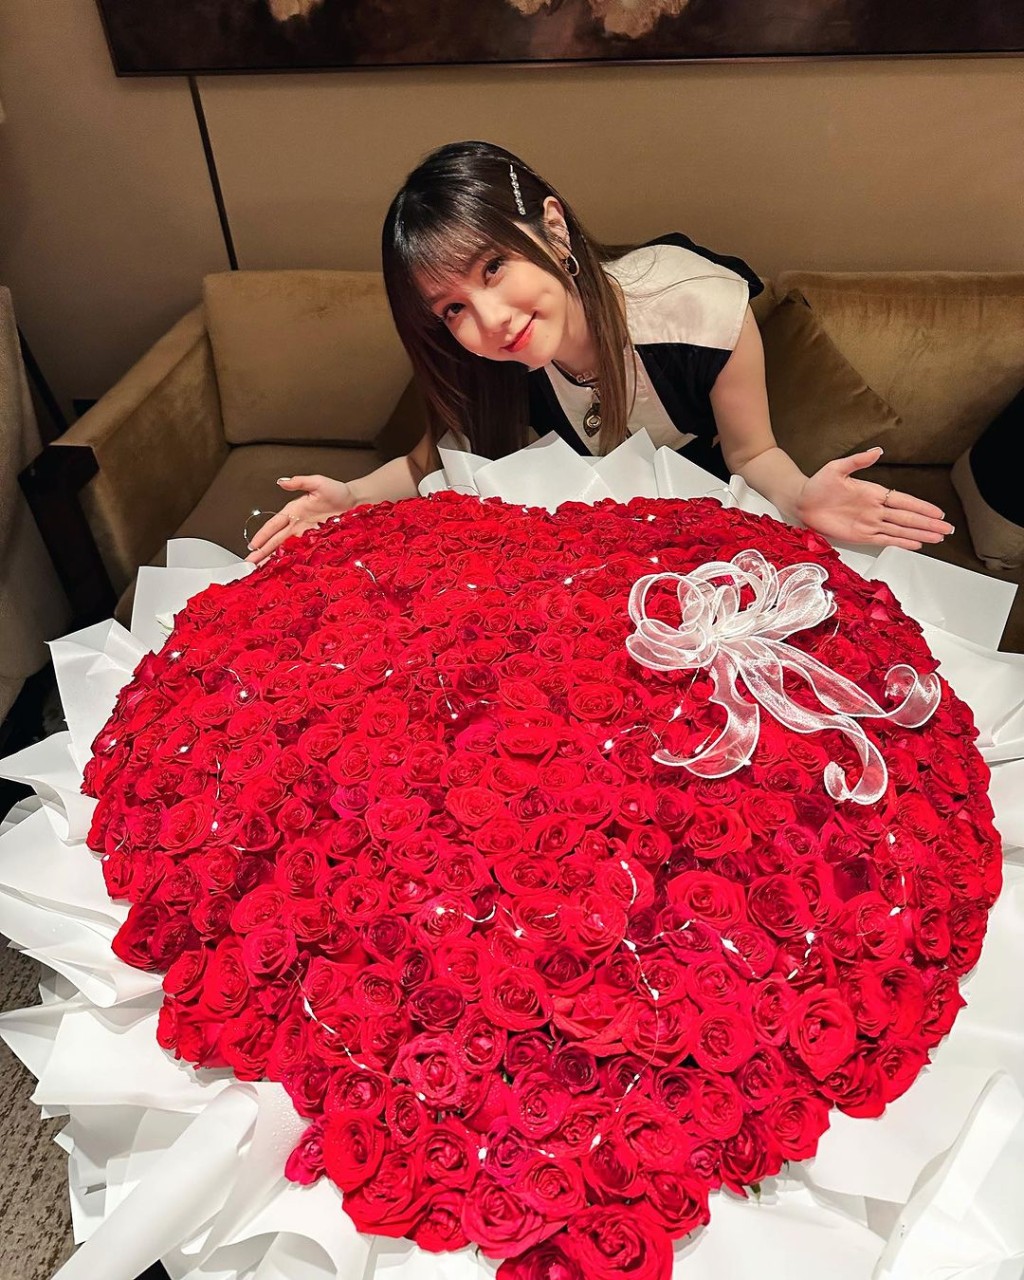 鄧紫棋生日收到大束紅玫瑰。